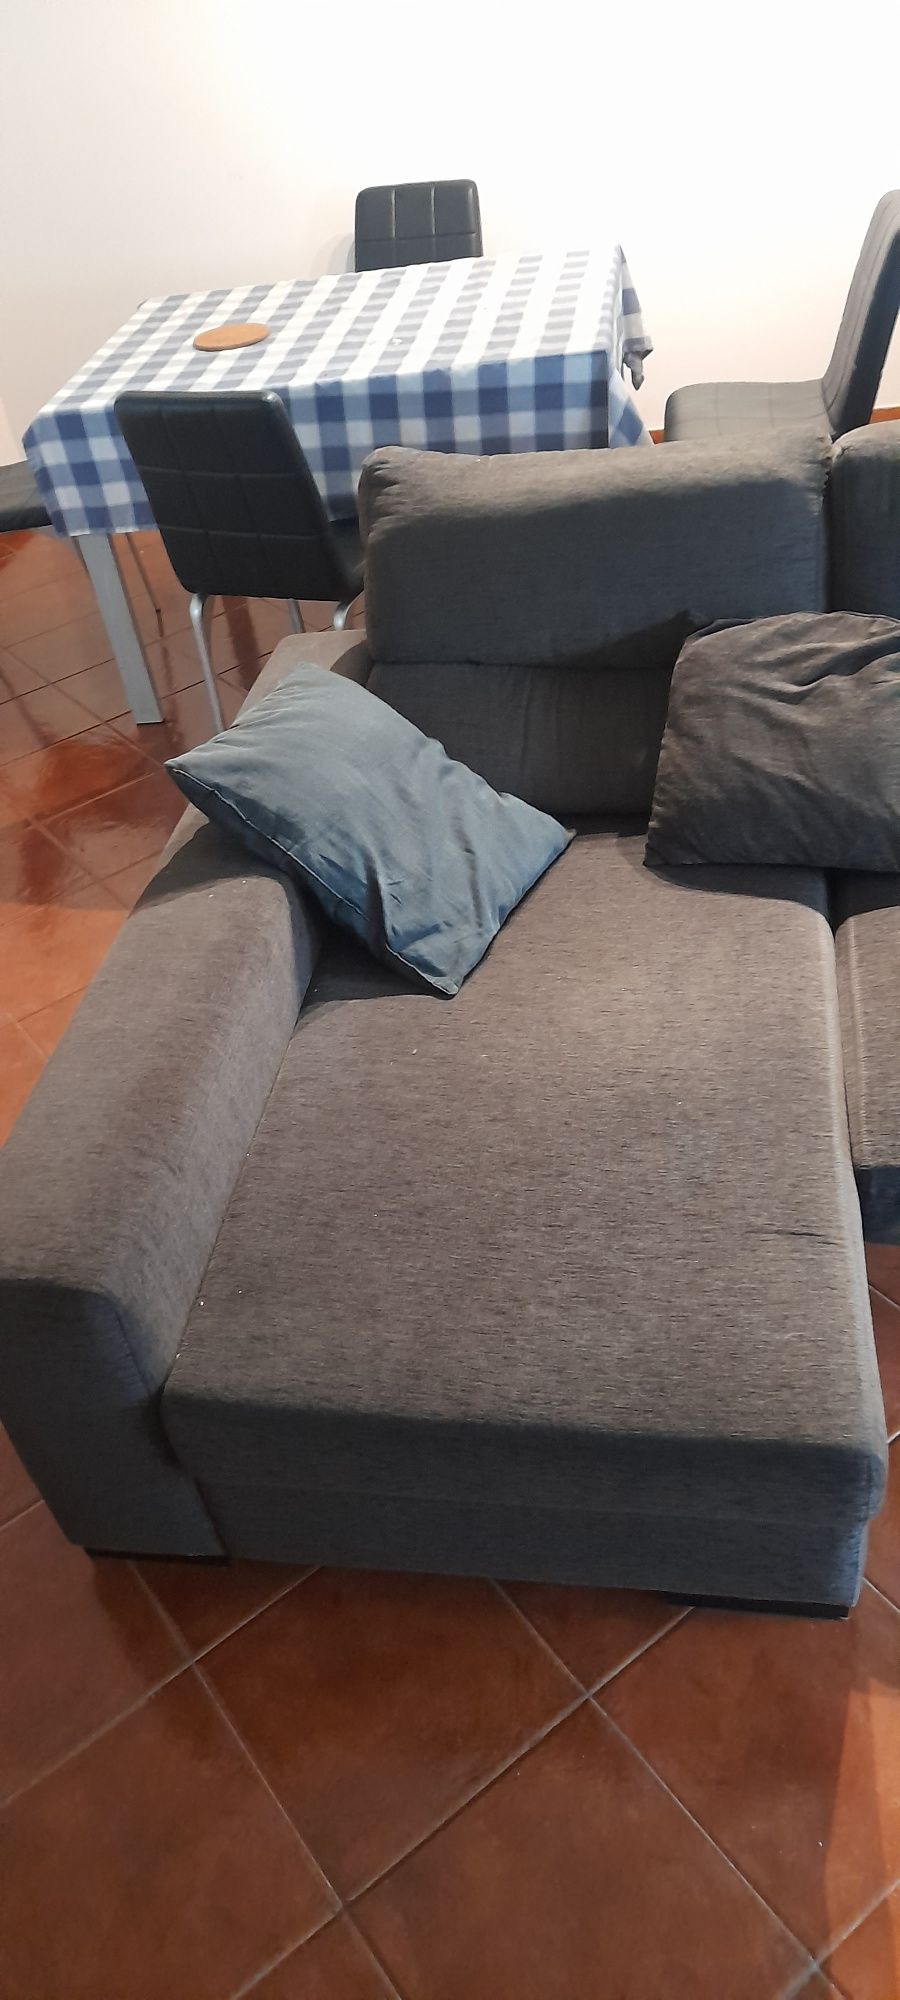 Sofá chaise longue castanho